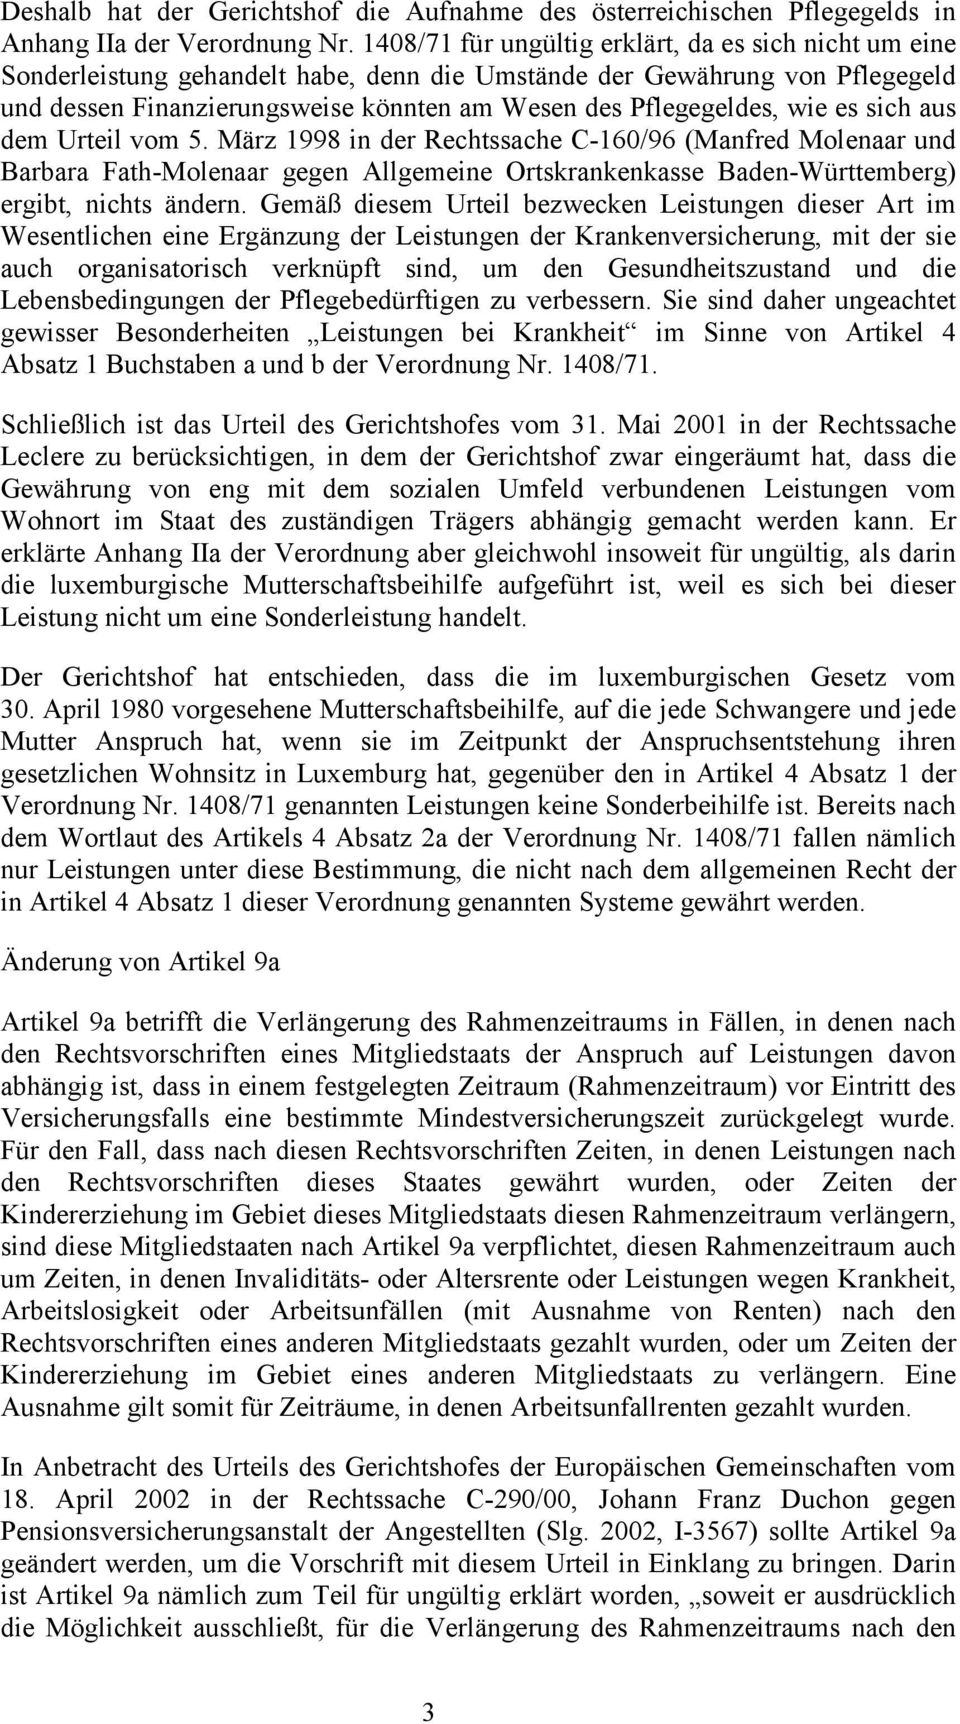 wie es sich aus dem Urteil vom 5. März 1998 in der Rechtssache C-160/96 (Manfred Molenaar und Barbara Fath-Molenaar gegen Allgemeine Ortskrankenkasse Baden-Württemberg) ergibt, nichts ändern.